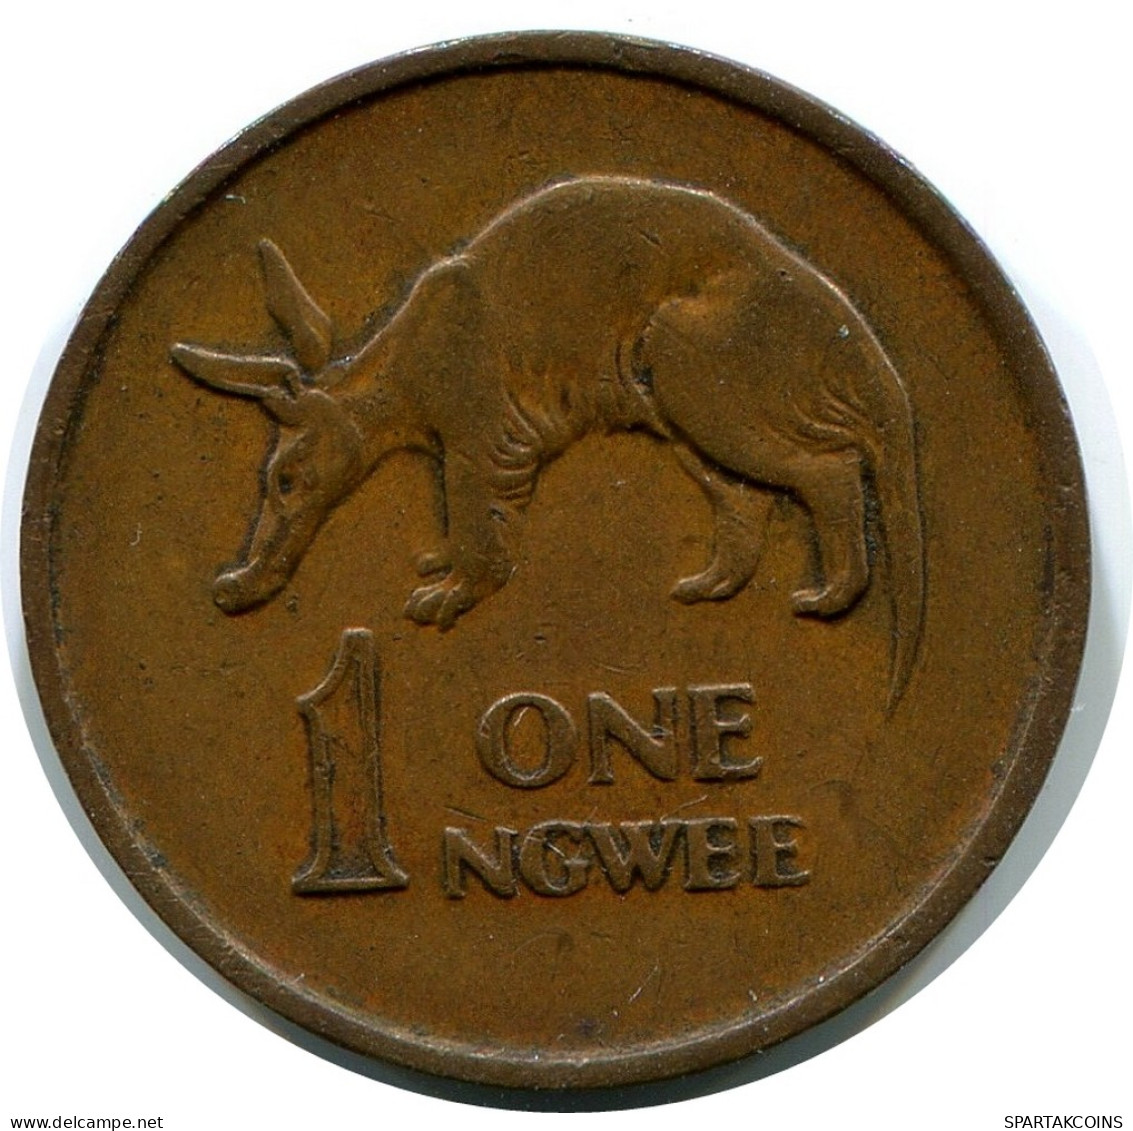 1 NGWEE 1972 ZAMBIA Coin #AP964.U - Zambia